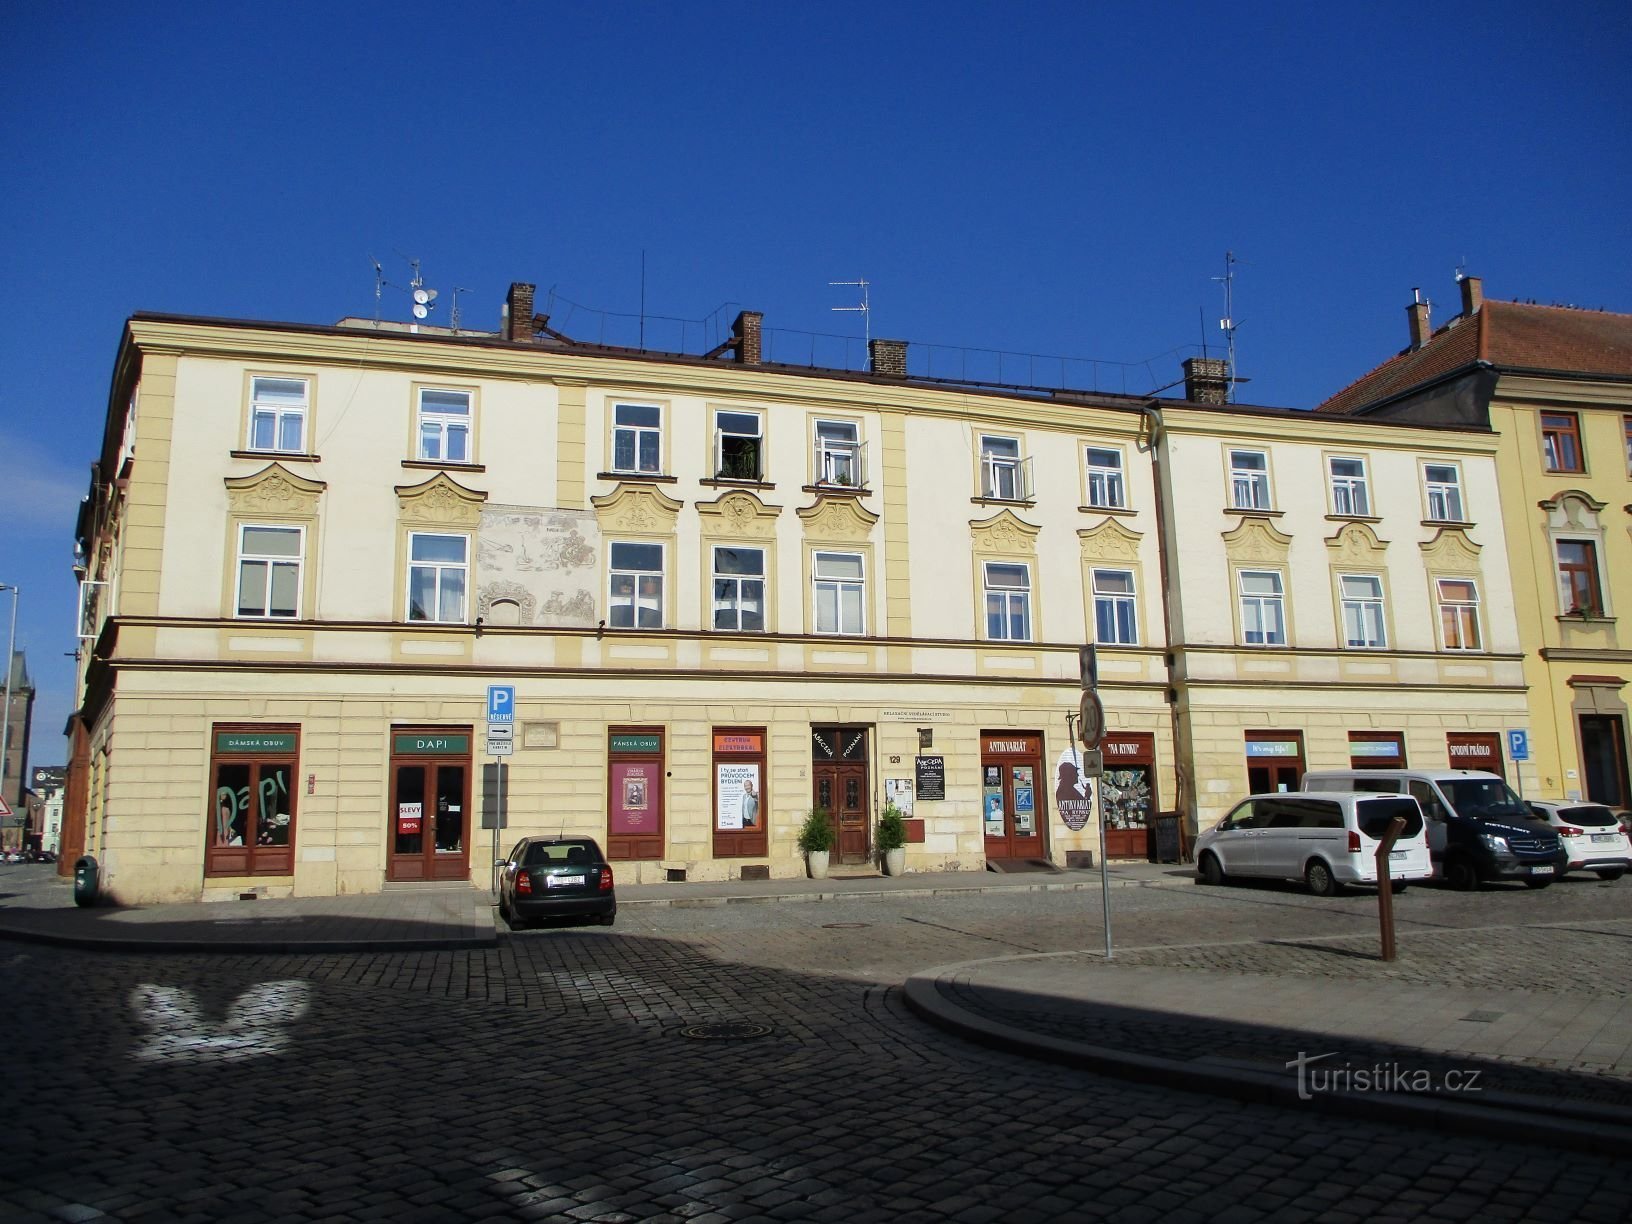 Malé náměstí br. 129 (Hradec Králové, 6.7.2019. travnja XNUMX.)